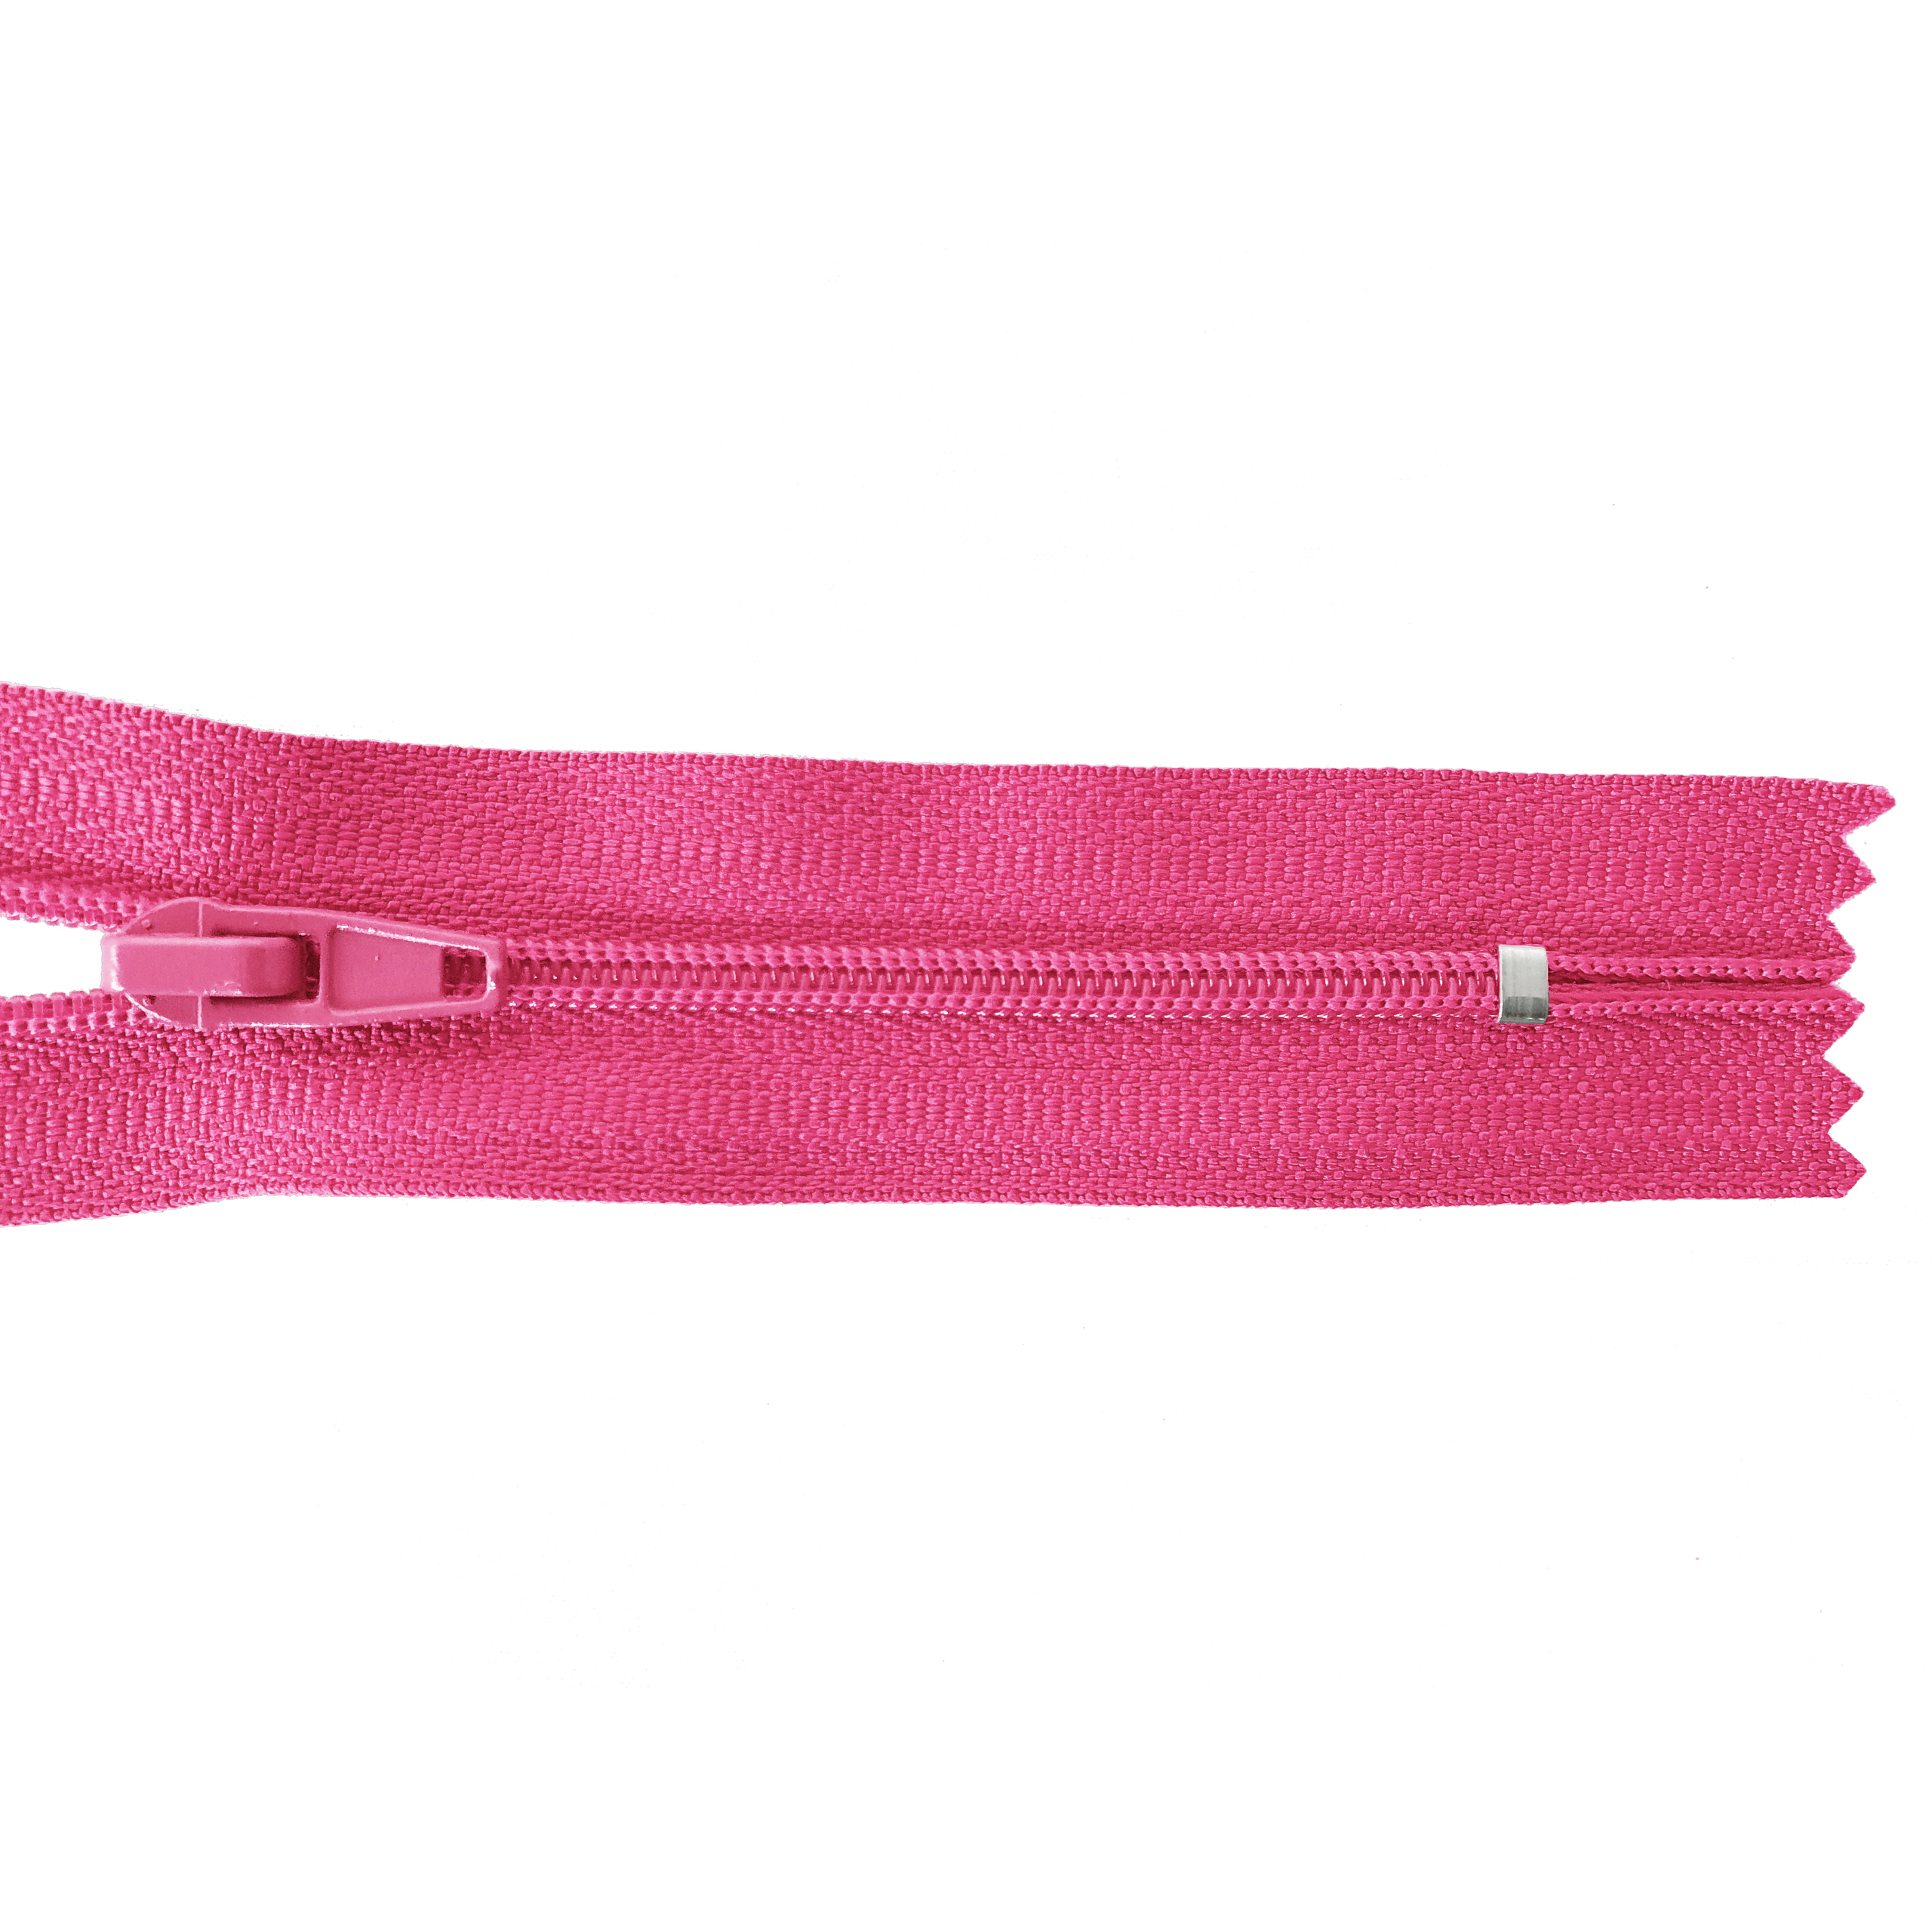 Reißverschluss 20cm, nicht teilbar, PES-Spirale fein, pink, hochwertiger Marken-Reißverschluss von Rubi/Barcelona